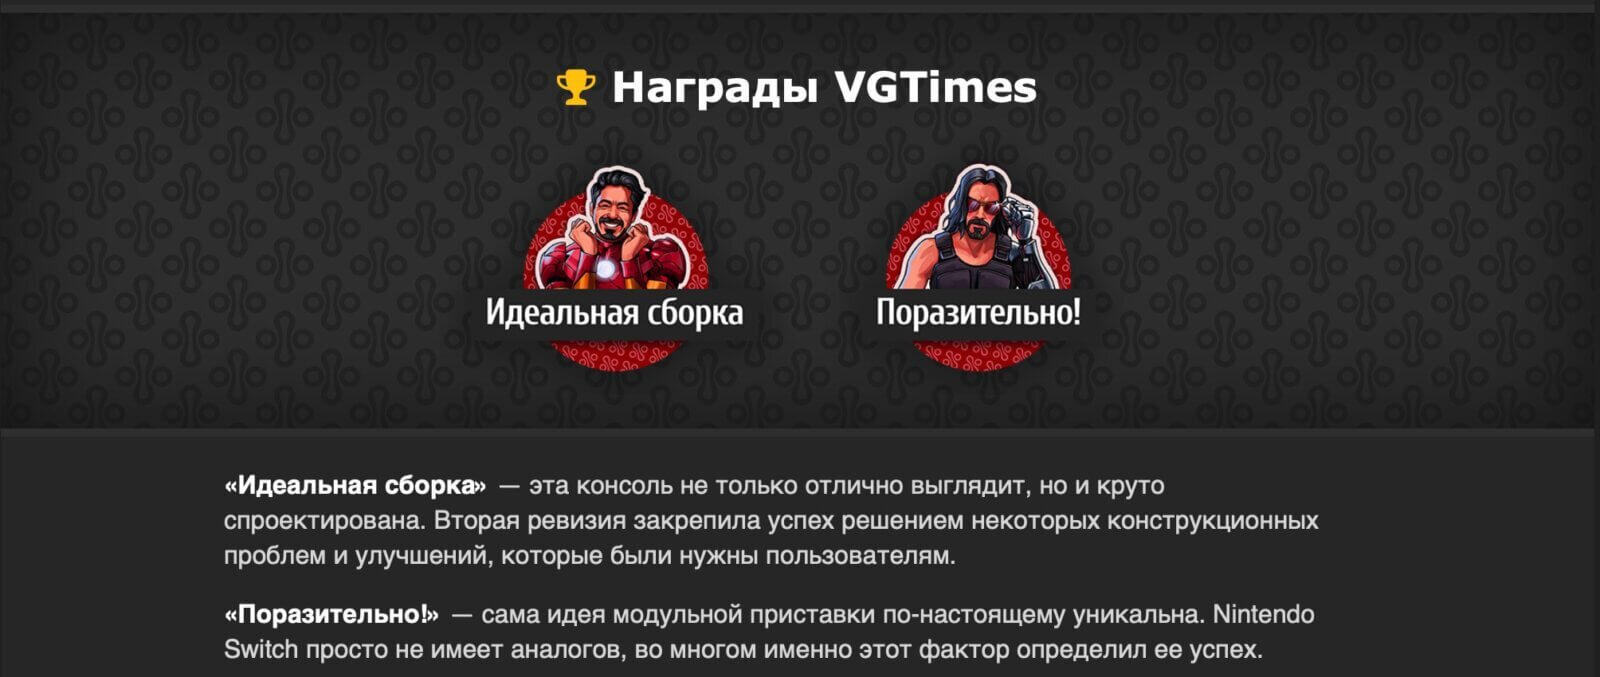 Медиакит VGTimes — нативная и медийная реклама